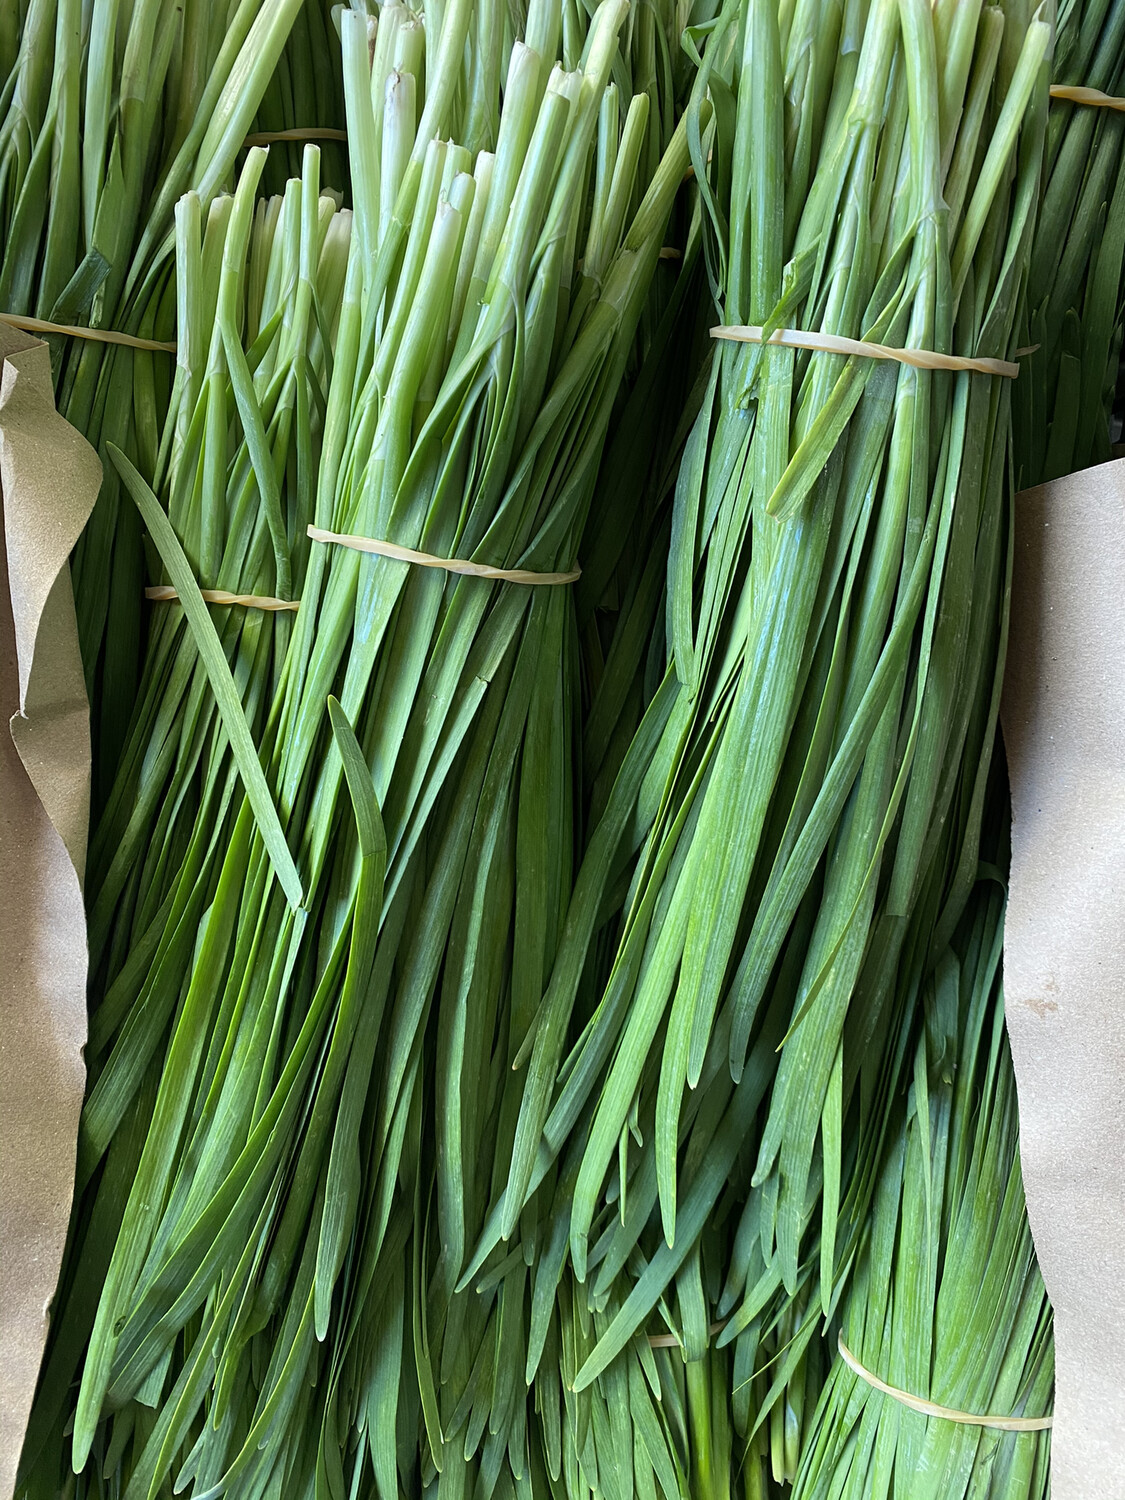 Herb Chives Green 韭菜 0.9-1磅 1扎